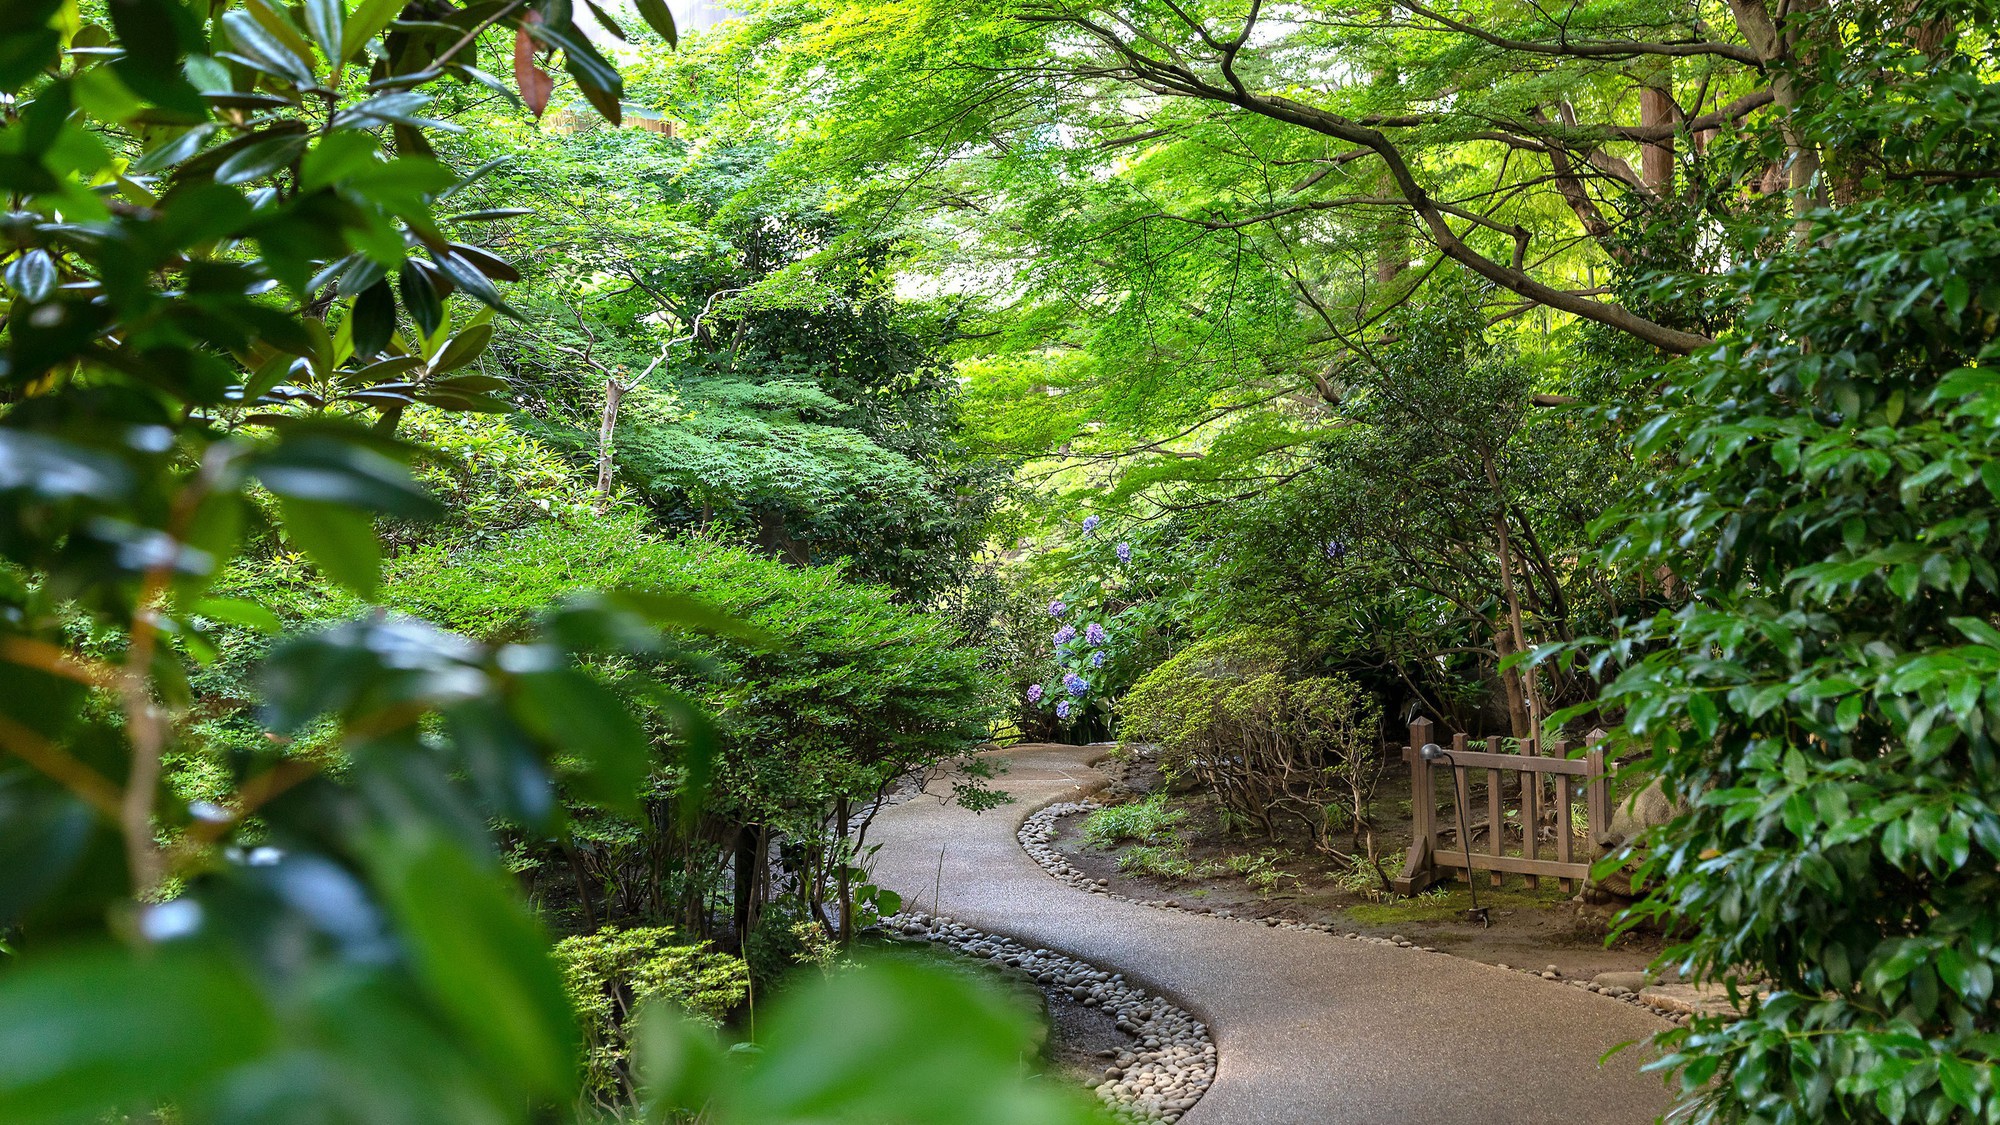 ホテル敷地内にある日本庭園は遊歩道が整備されているので、散策におすすめです。